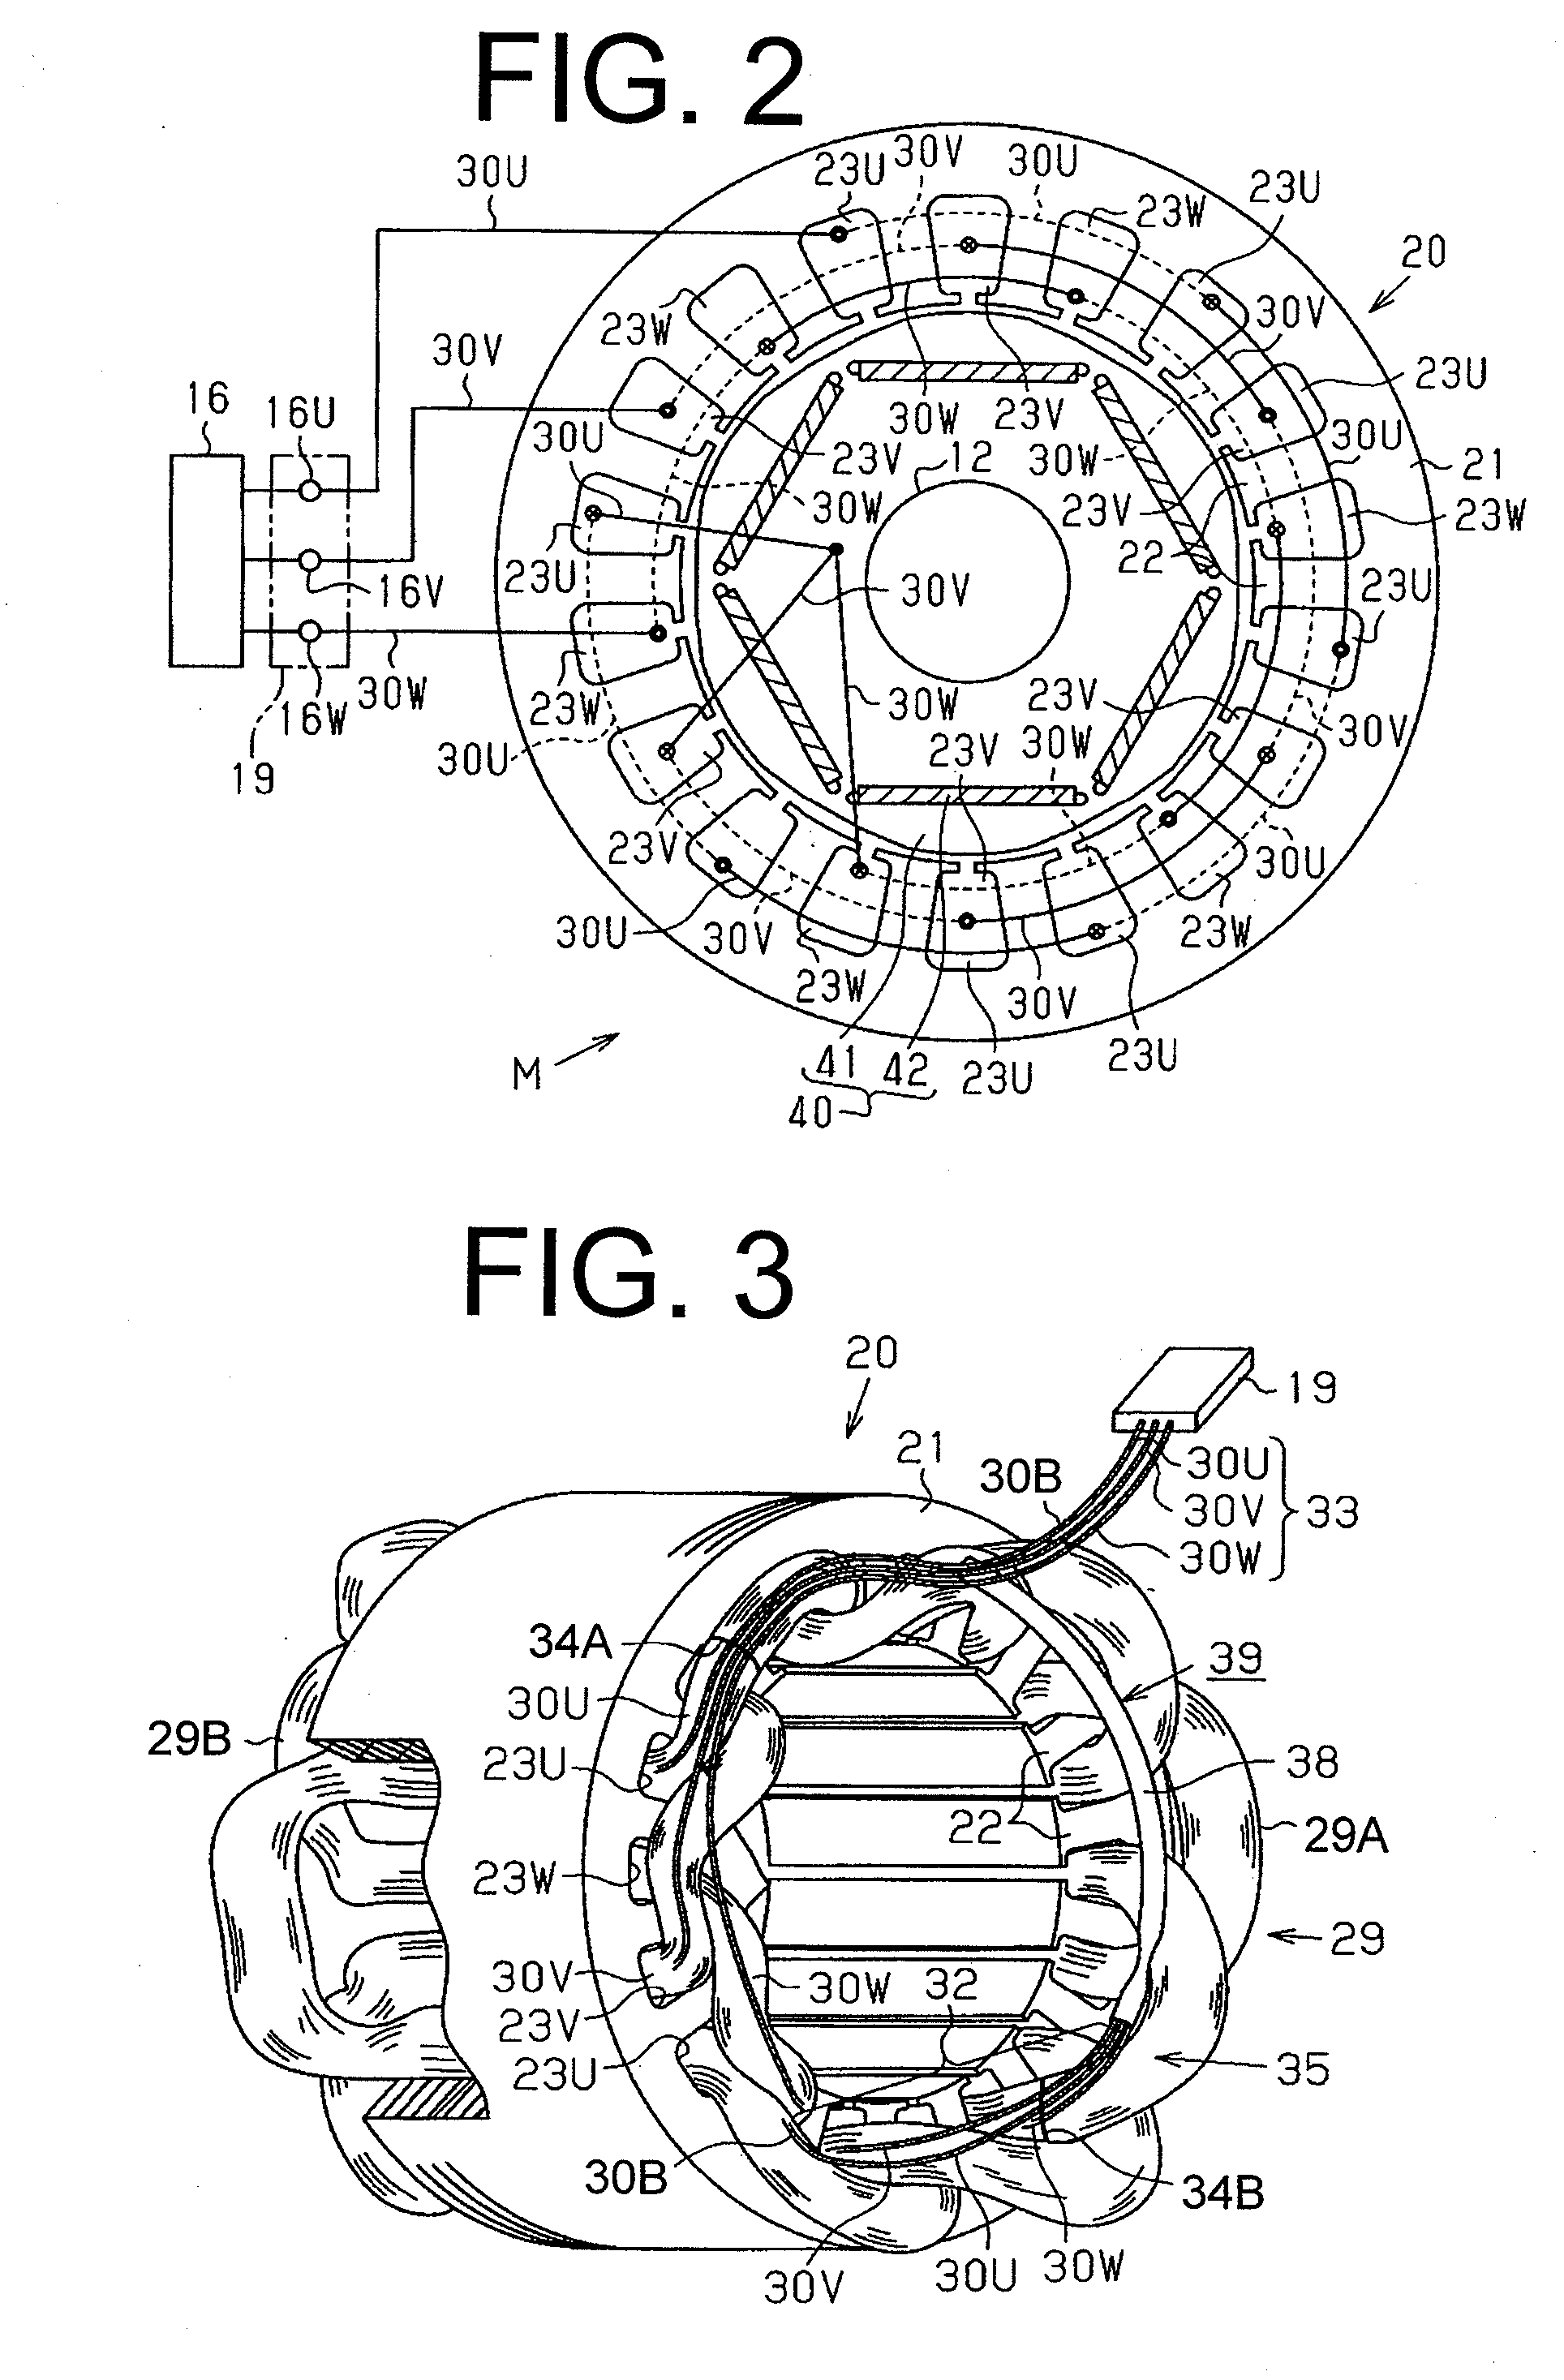 Motor-driven compressor